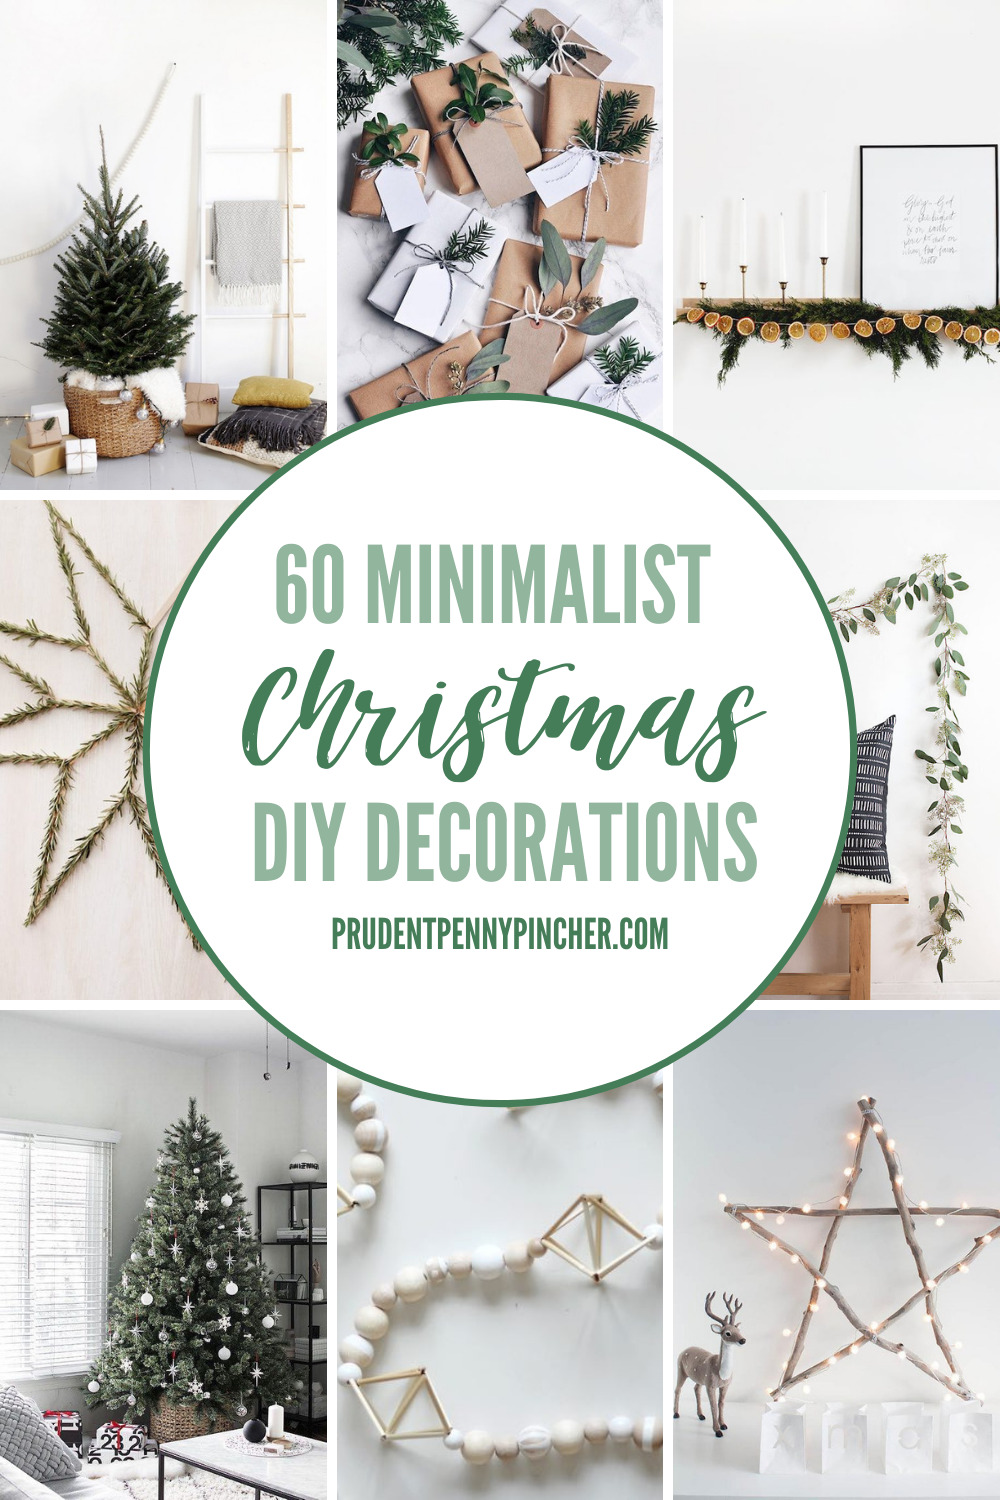 Minimalist Trees: Best Minimal Christmas Tree Ideas ~ Fresh Design Blog